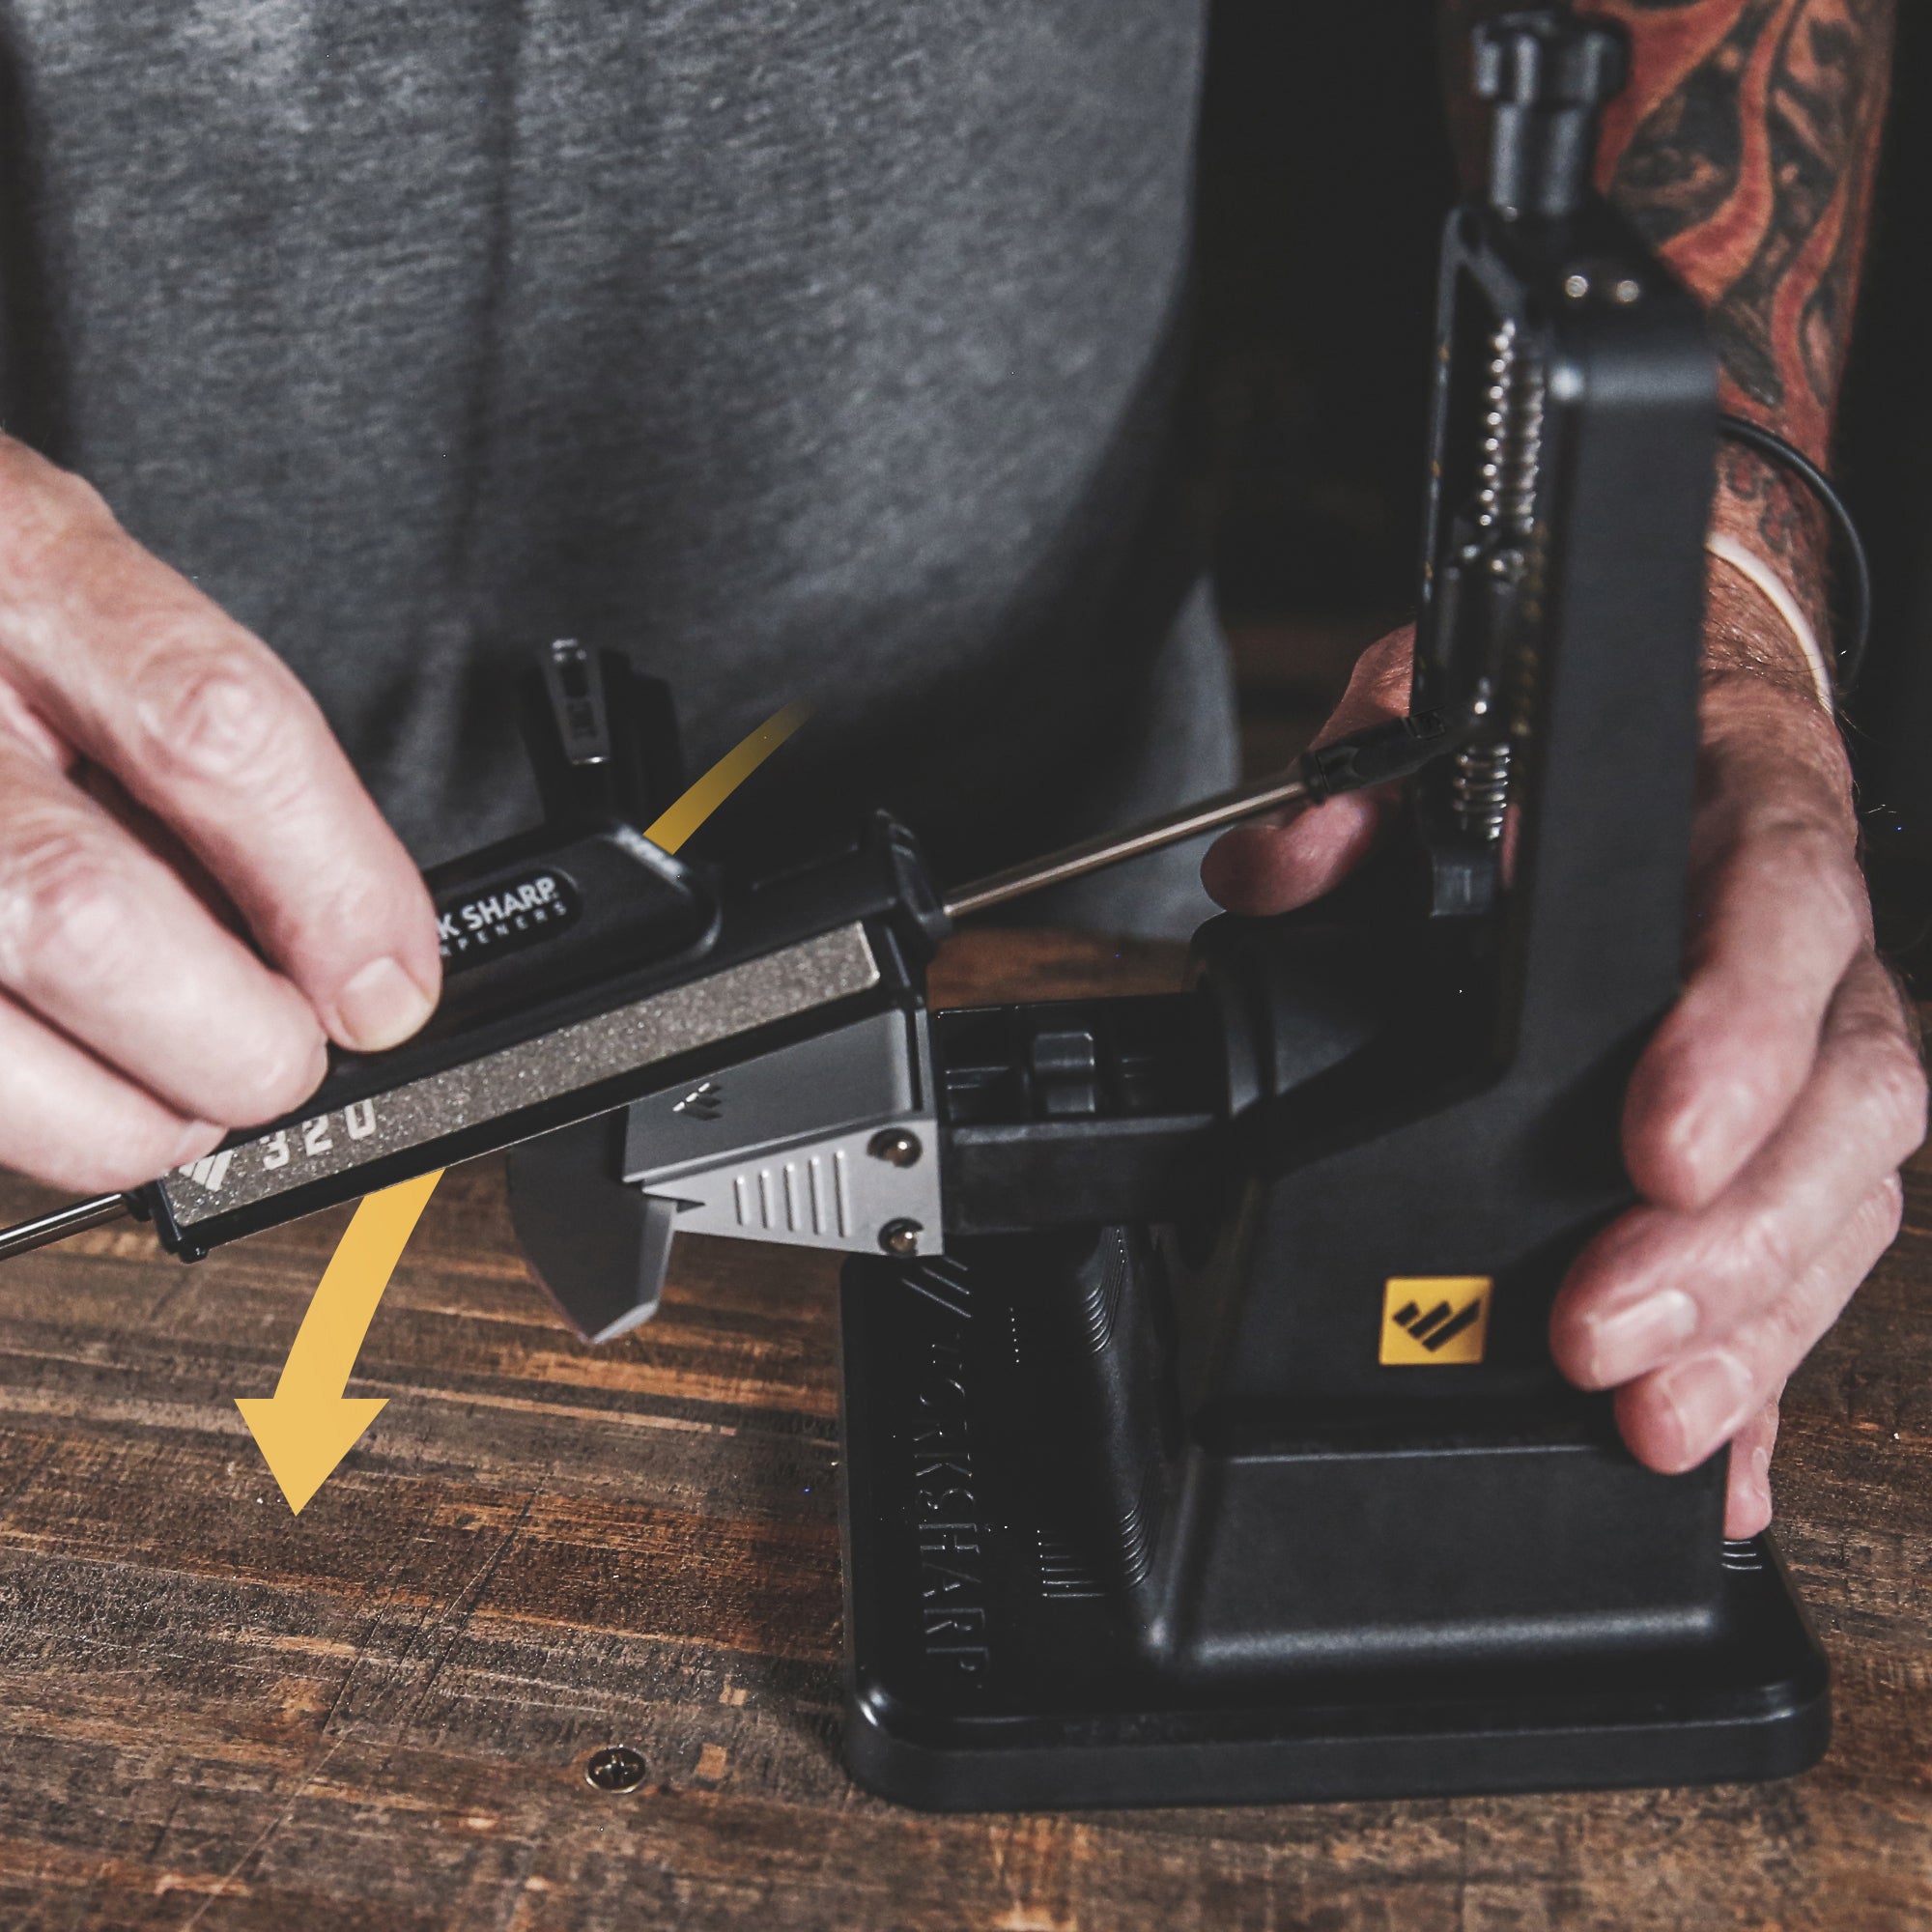 Professional Precision Adjust™ Knife Sharpener